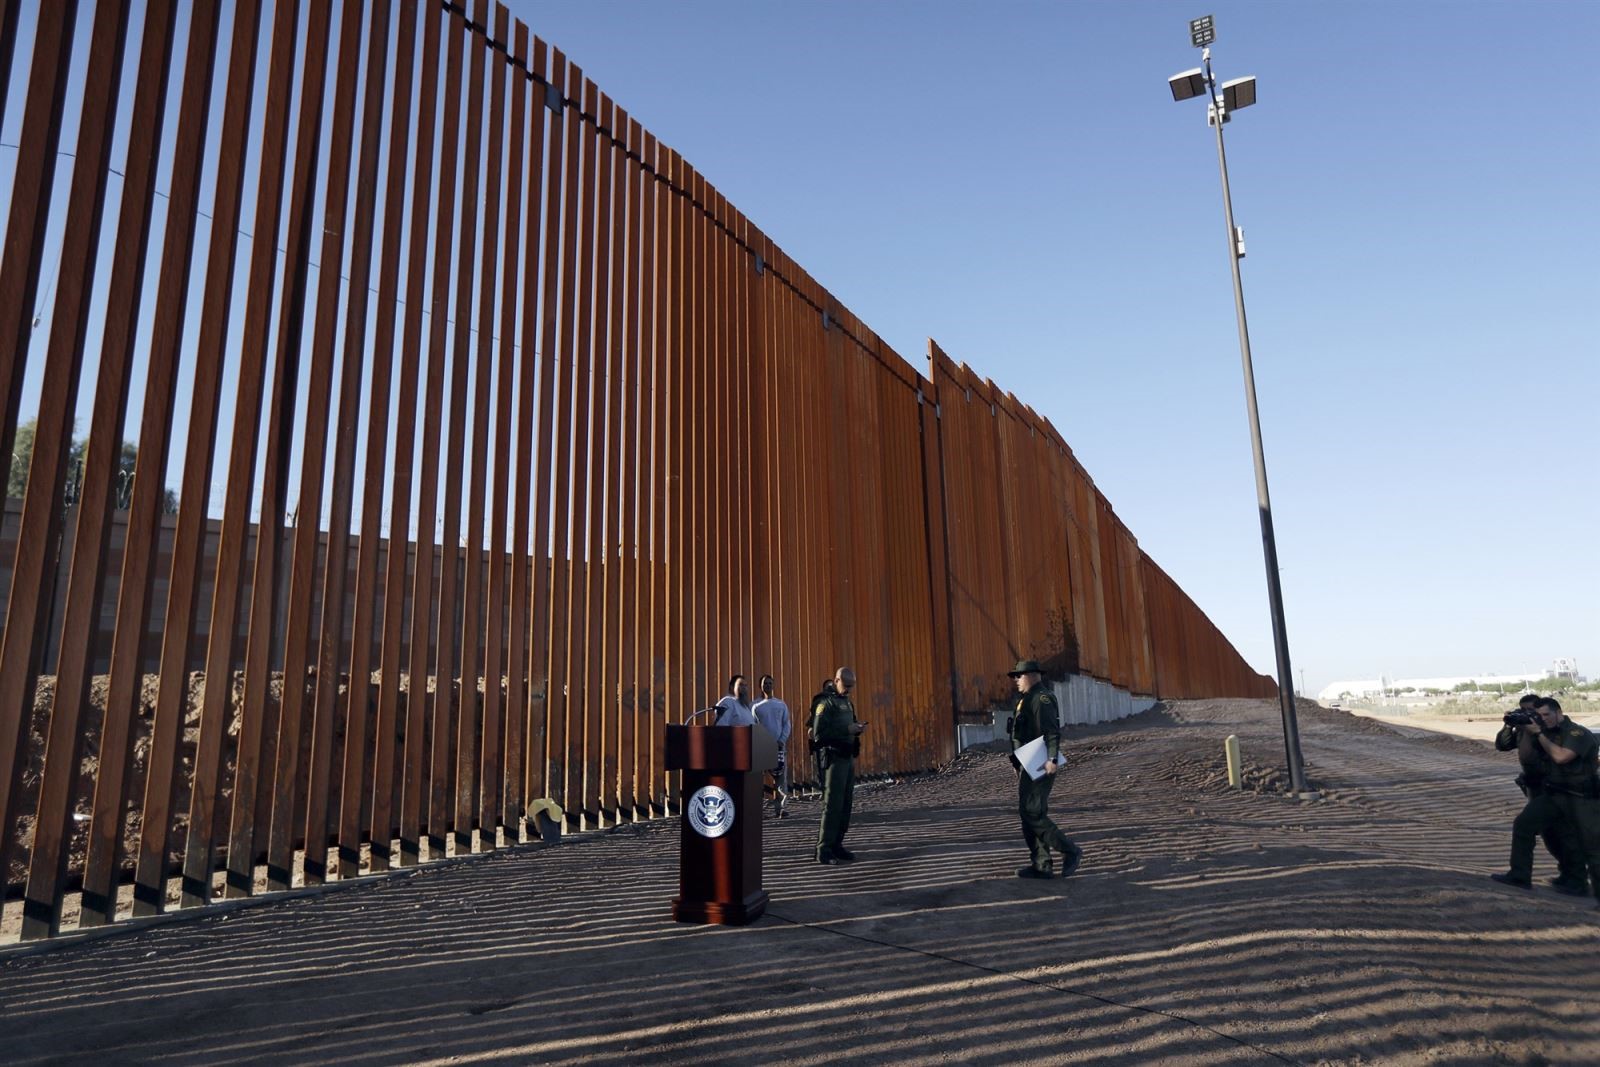 Xây tường biên giới là một cam kết tranh cử ông Trump muốn thực hiện bằng được. Ảnh: AP